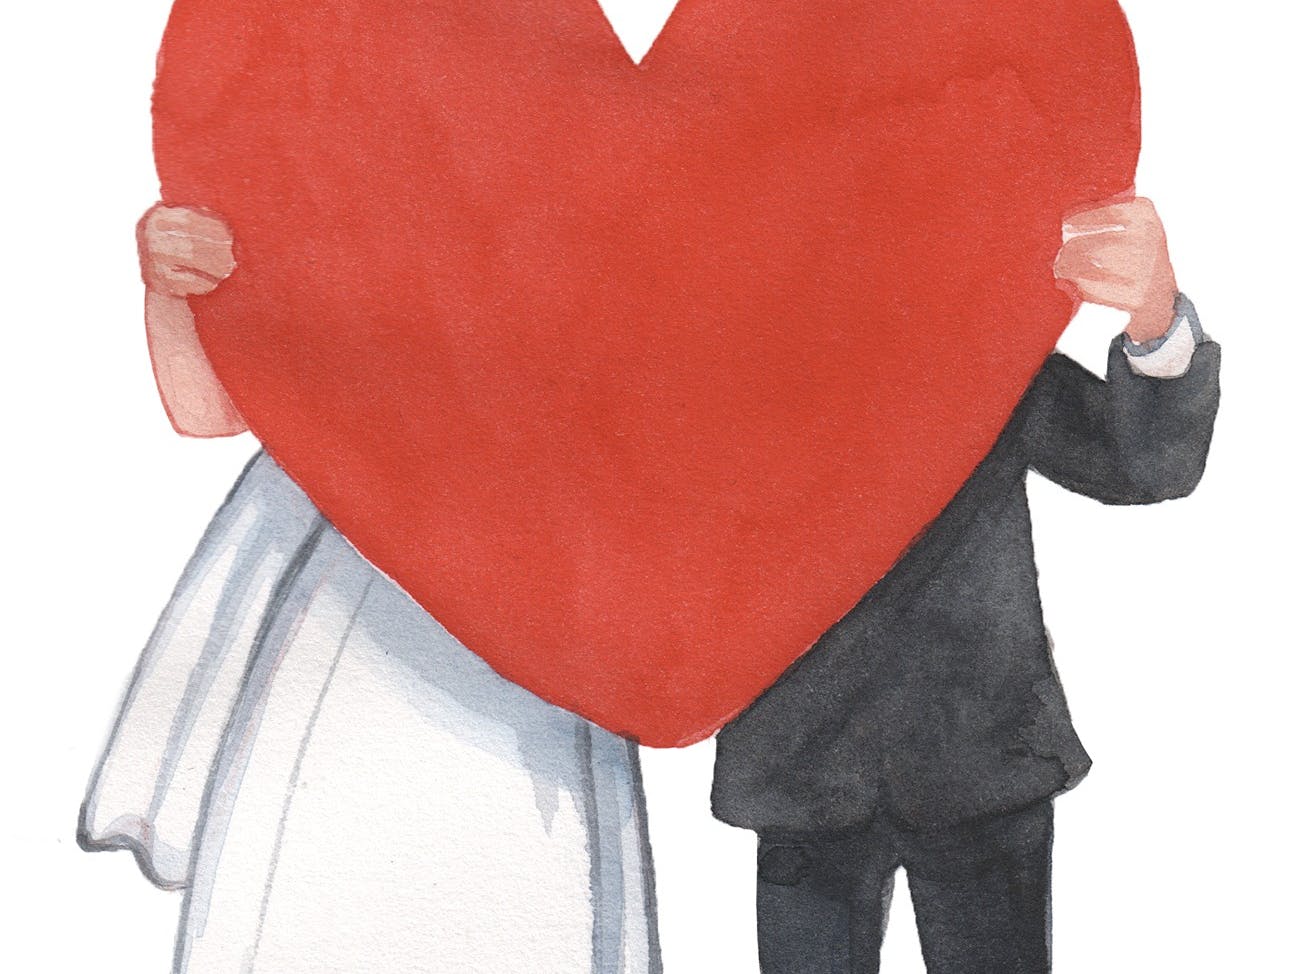 Puks brevkasse: Giftes uden at mine forældre ved det?